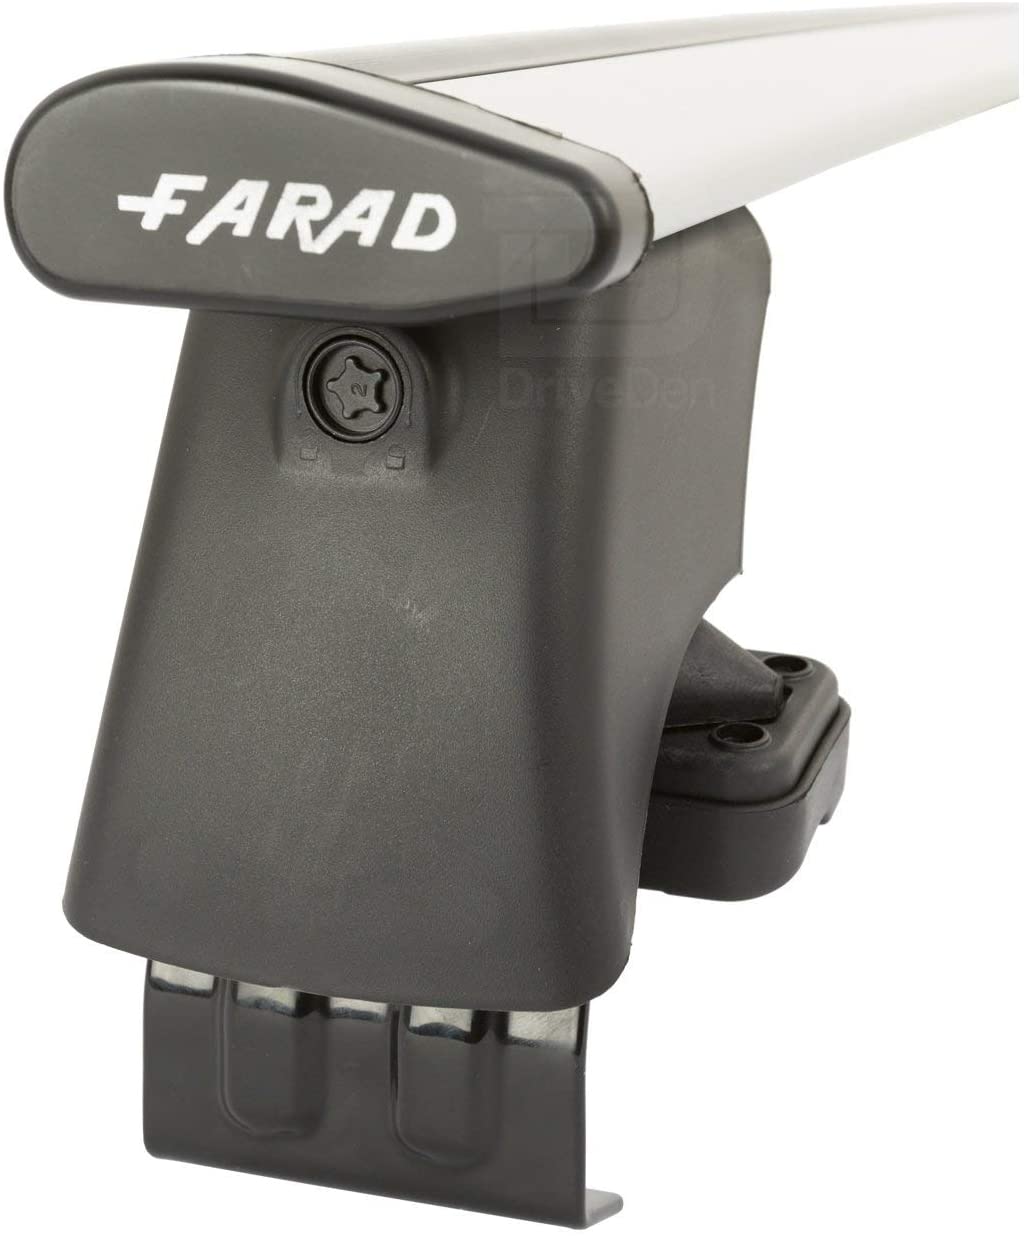 FARAD-Kit H2 per barre portatutto - Seat Altea 2004-2015 (senza corrimano)